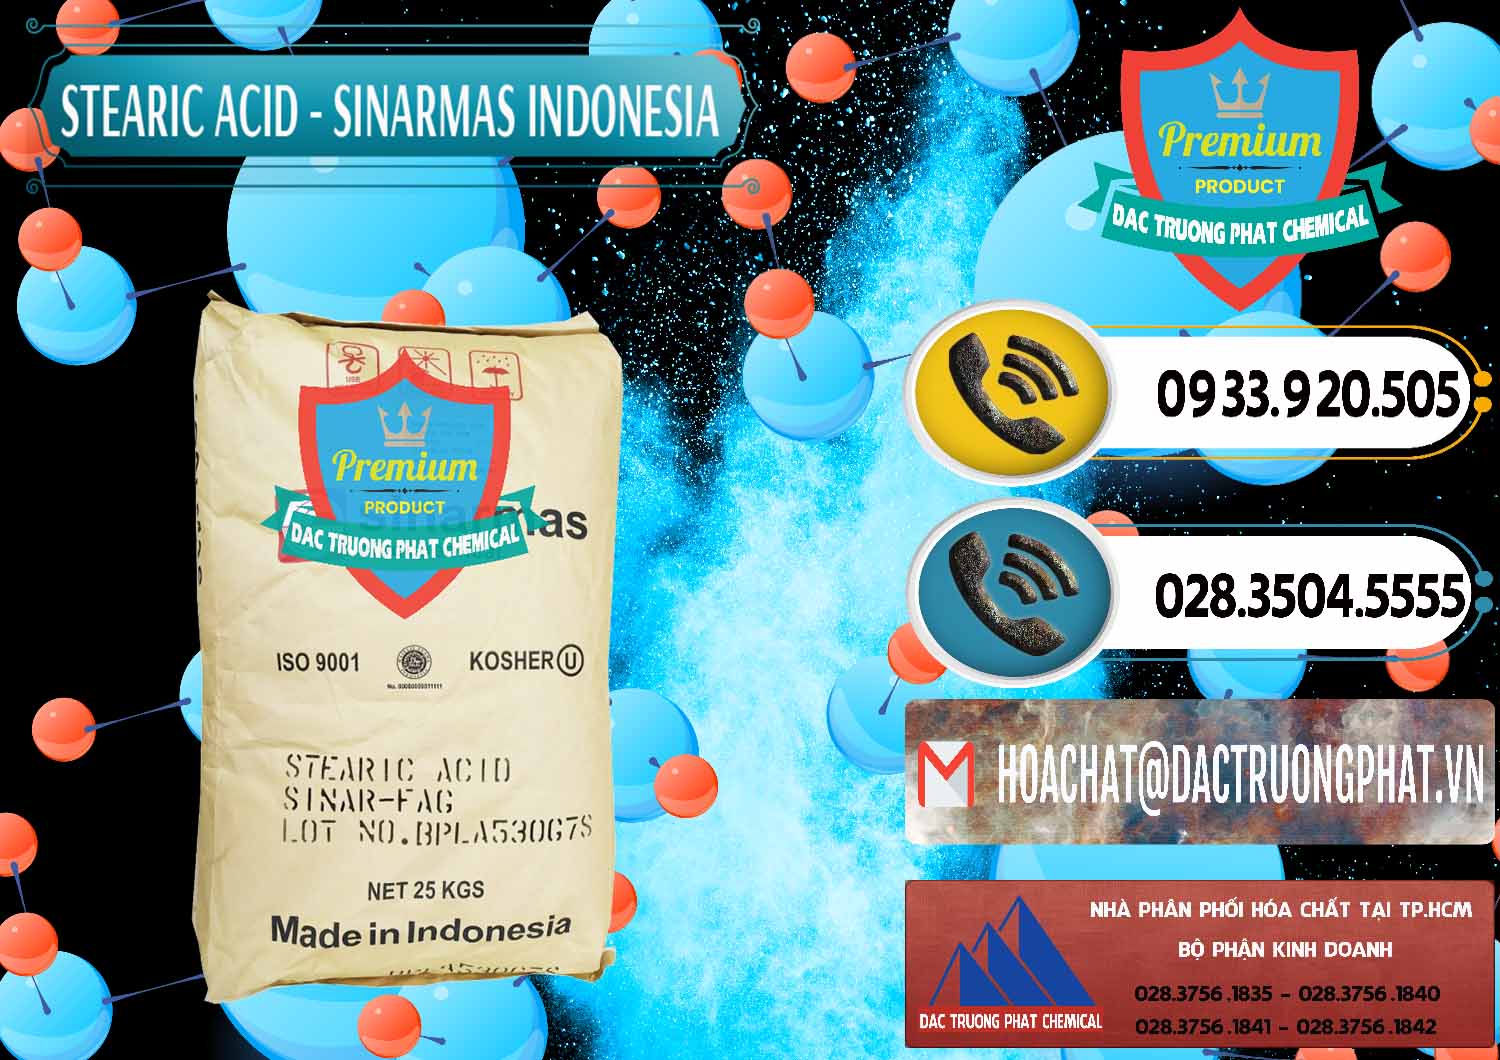 Đơn vị chuyên bán ( phân phối ) Axit Stearic - Stearic Acid Sinarmas Indonesia - 0389 - Đơn vị nhập khẩu _ cung cấp hóa chất tại TP.HCM - hoachatdetnhuom.vn